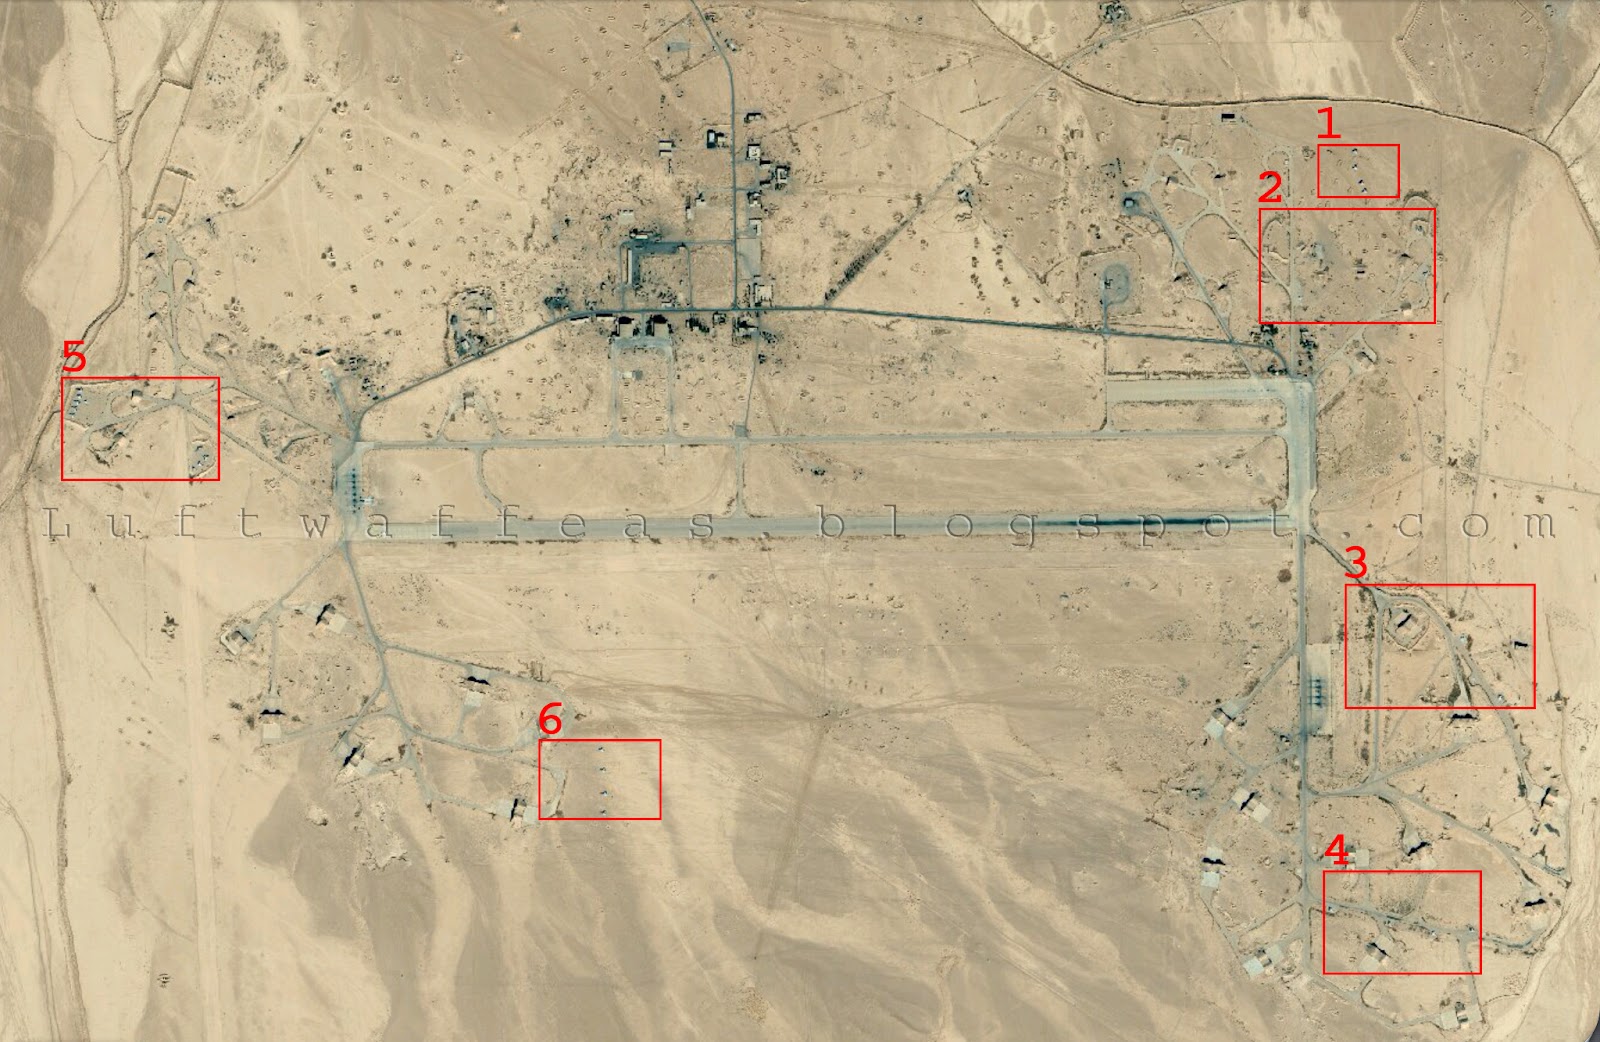 # الوضع الحقيقي ... لطائرات MIG-25 السورية # T4+-+KEYMAP